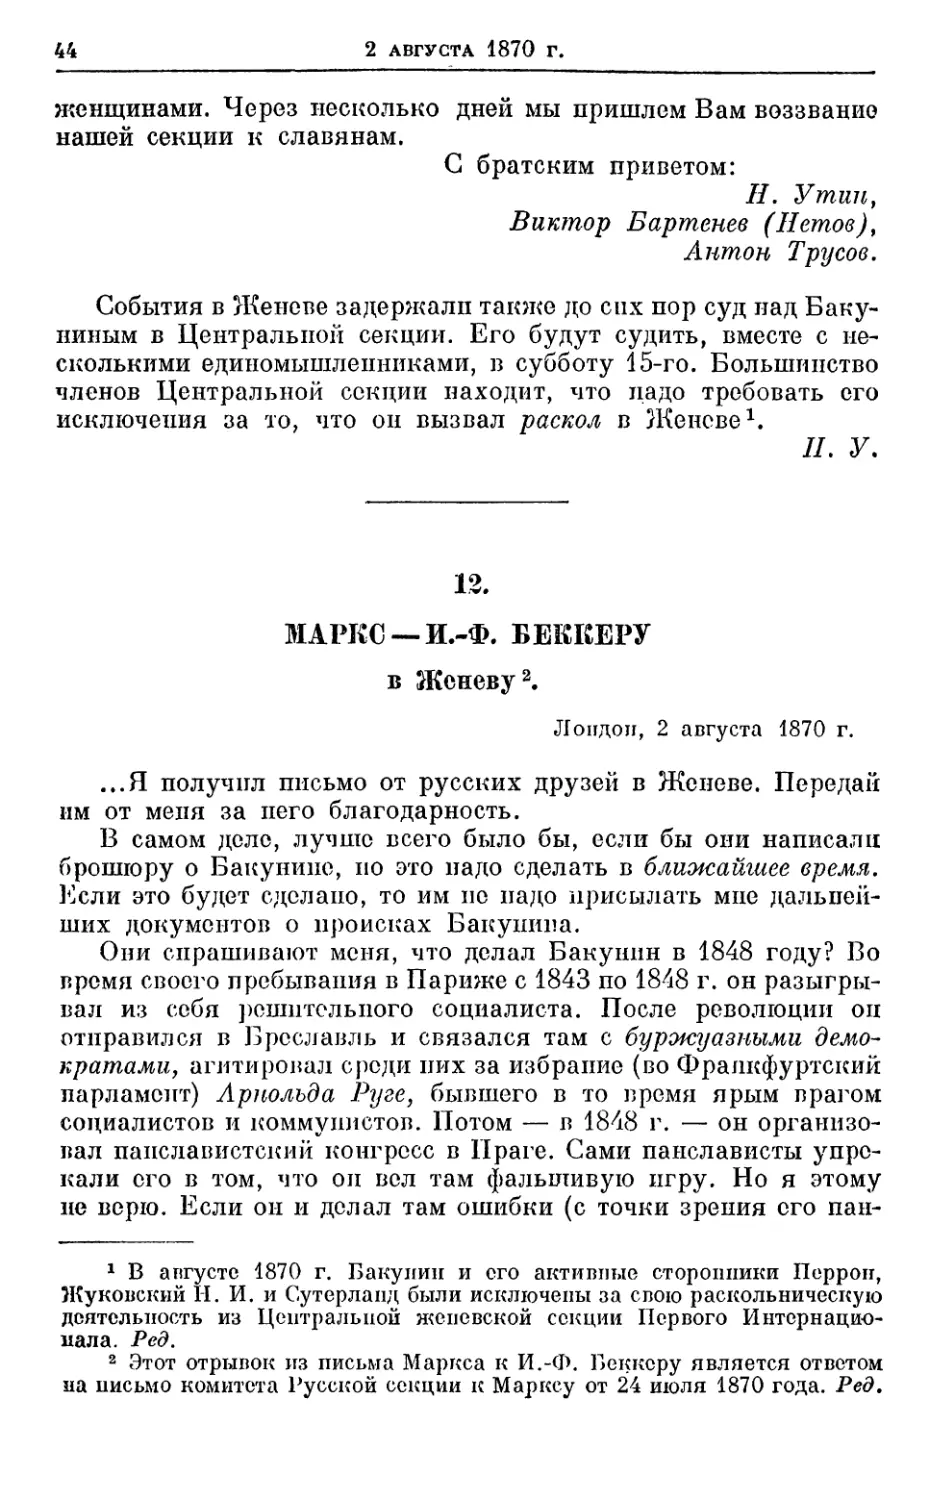 12. Маркс — И.-Ф. Беккеру, 2 августа 1870г